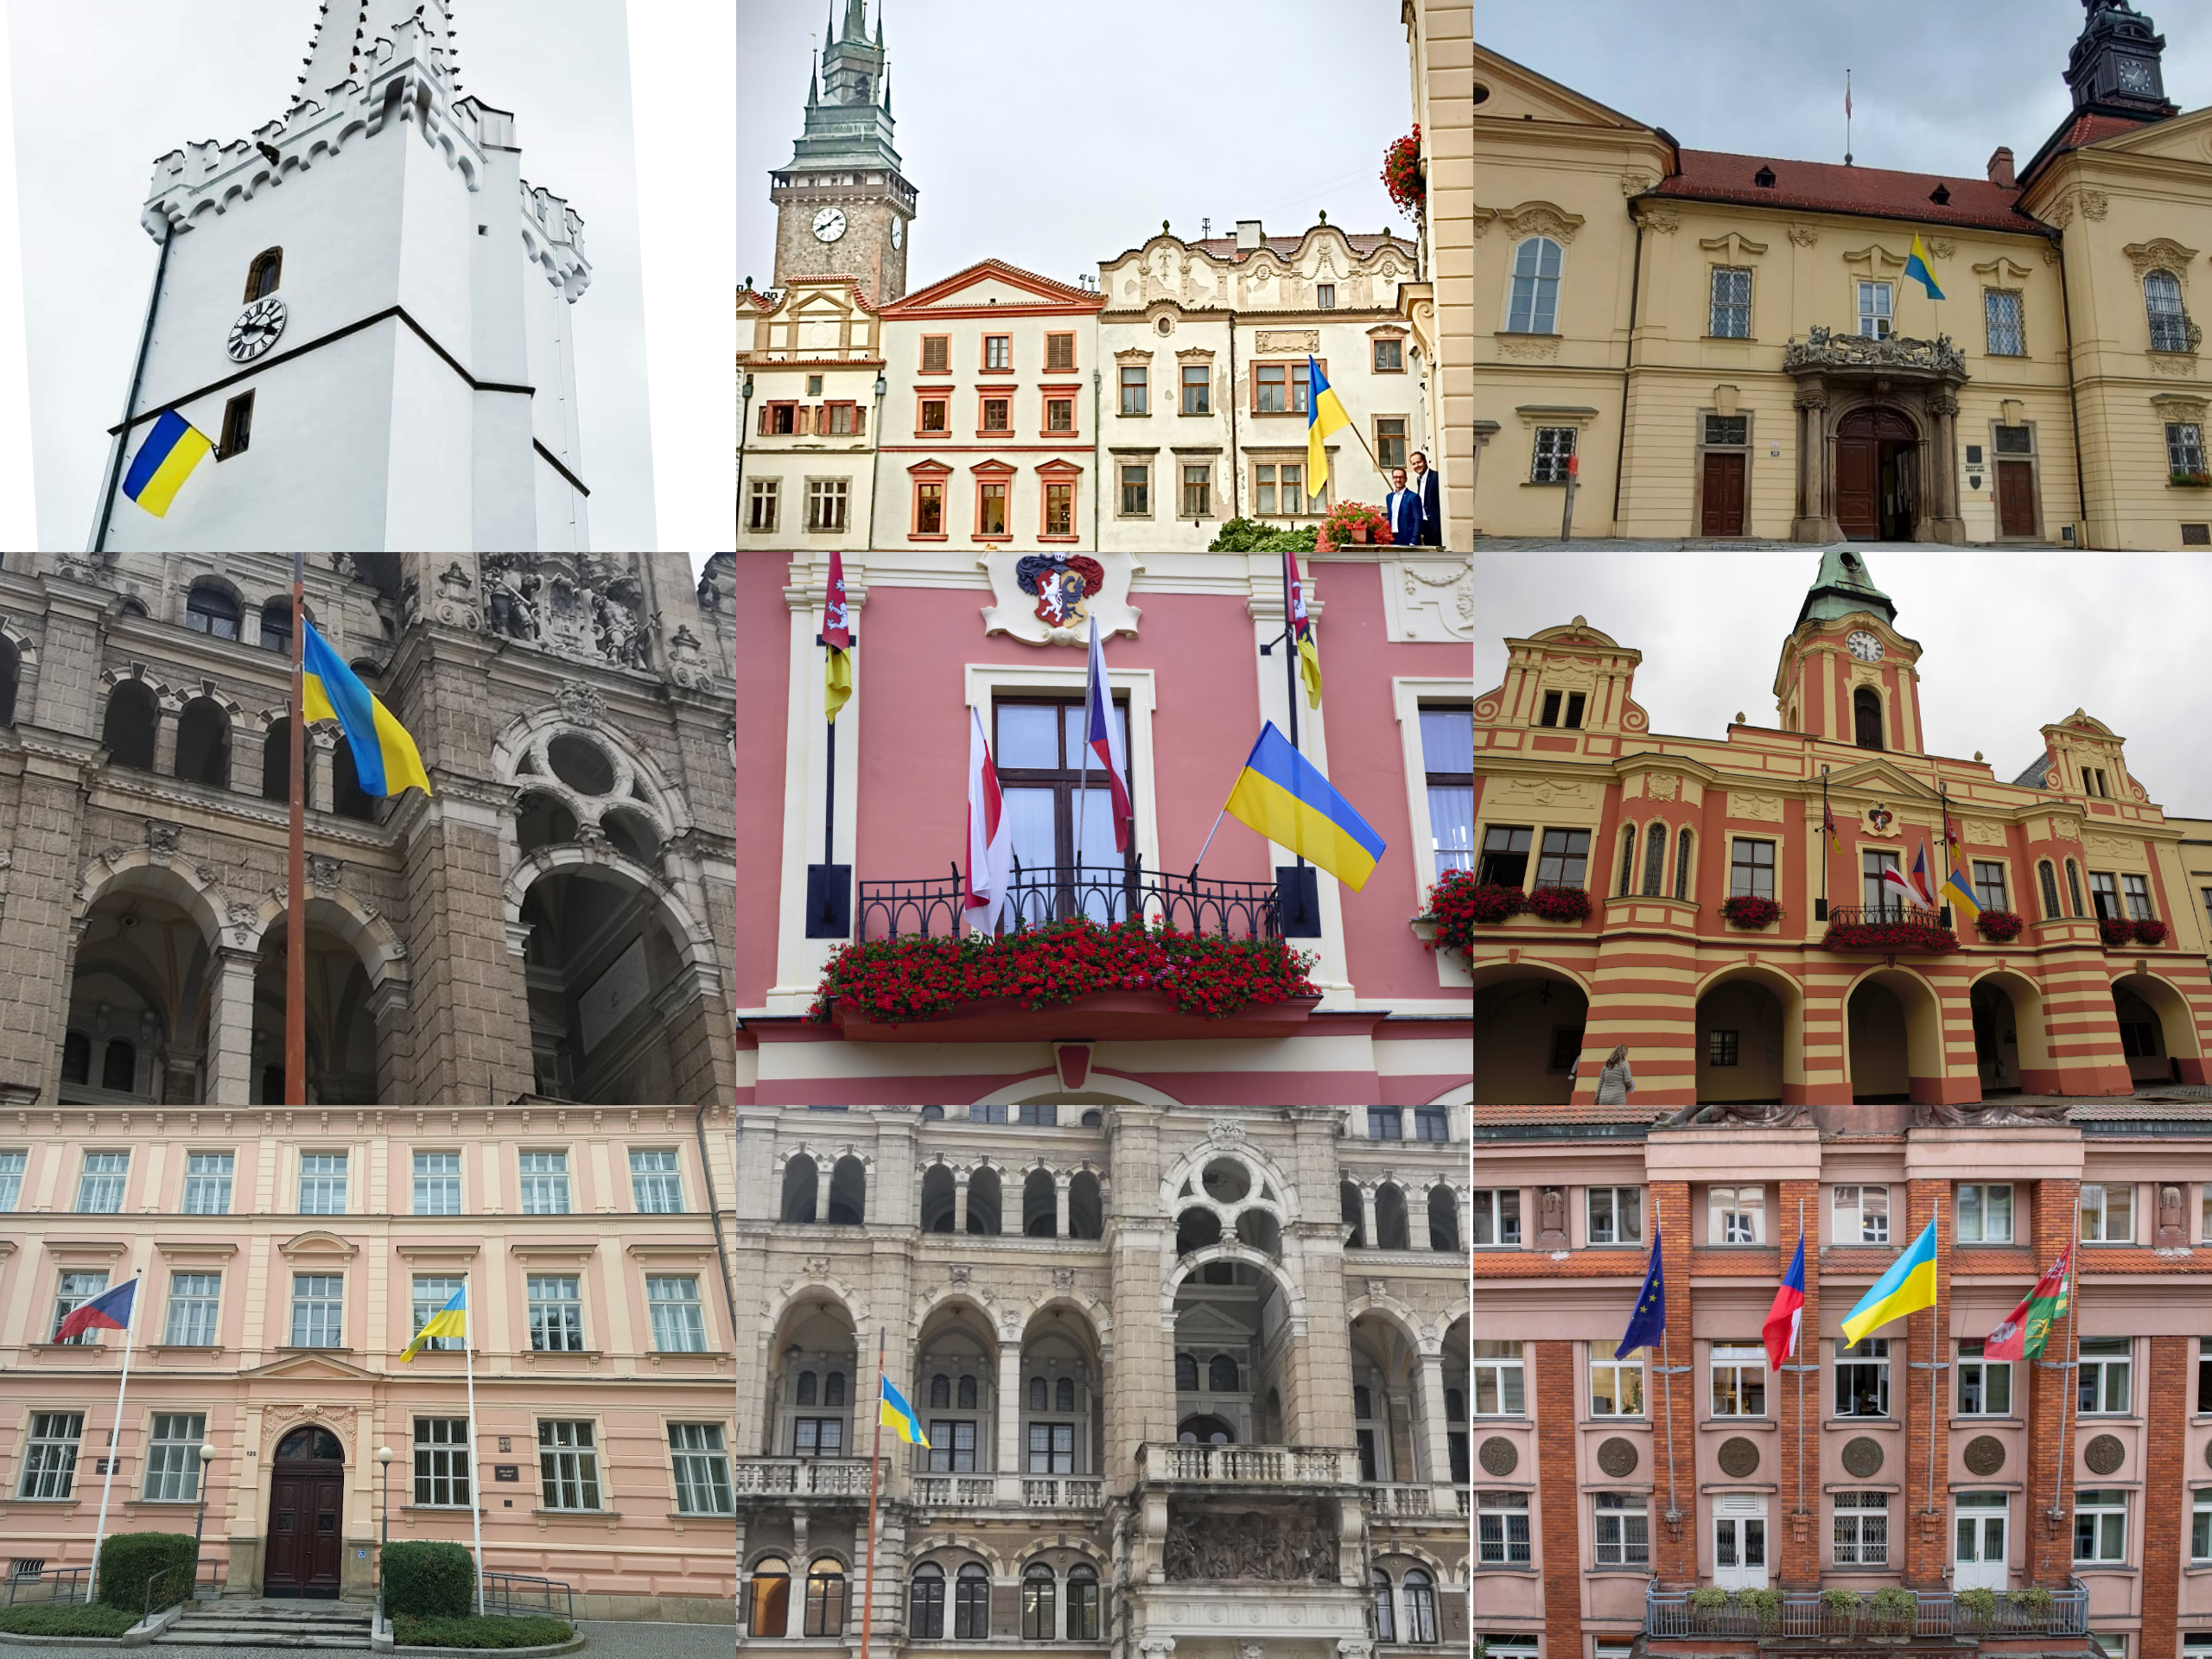 У шести містах Чехії вивісили українські прапори до Дня Незалежності